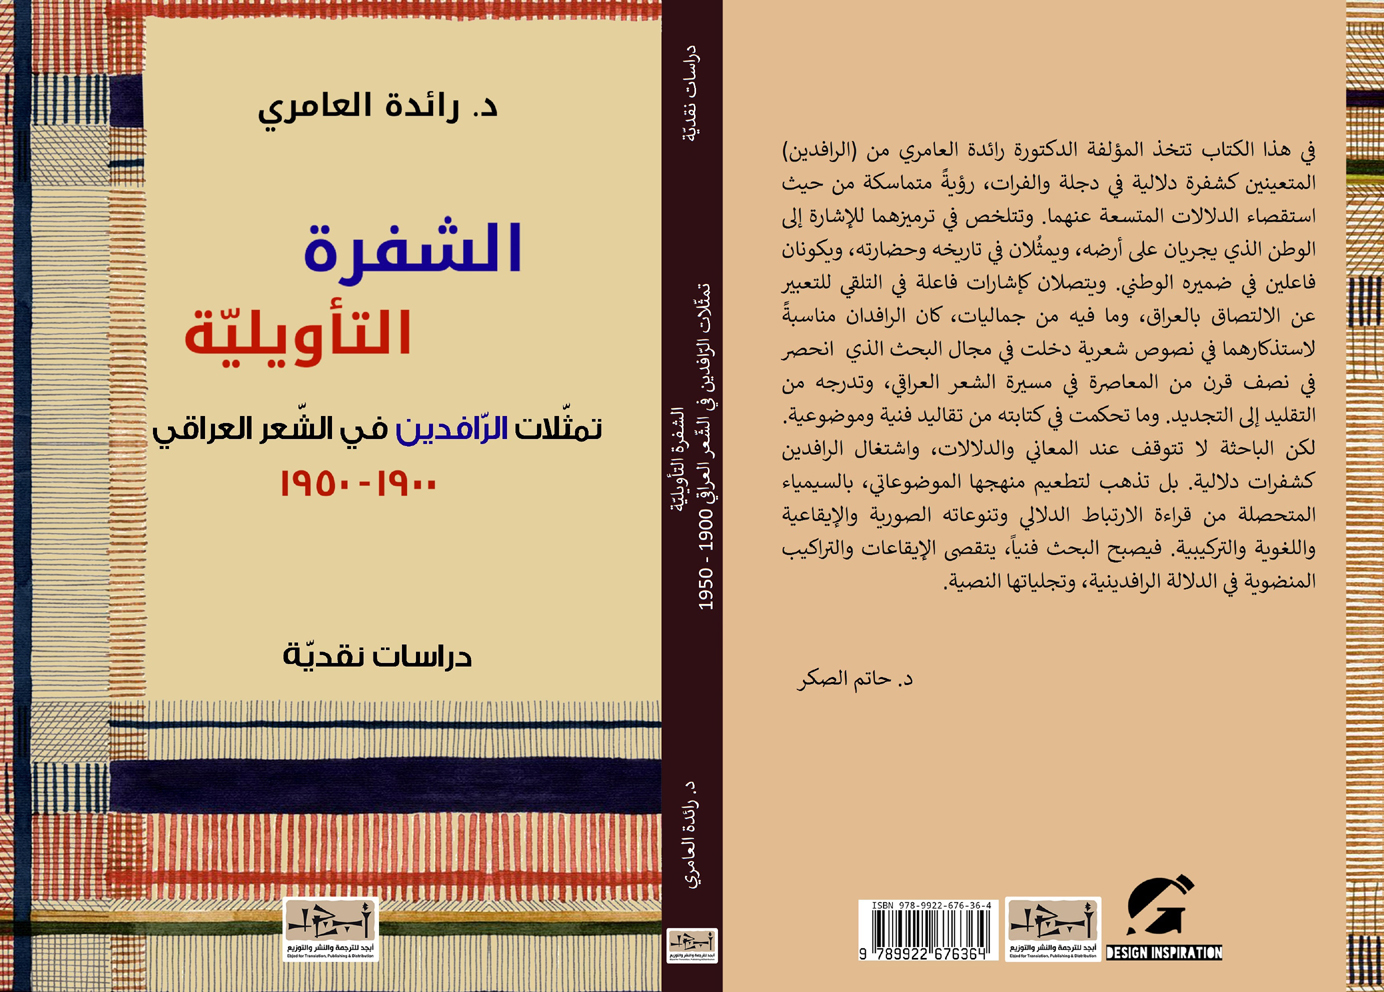 اسم الكتاب: الشفرة التأويلية – تمثلات الرافدين في الشعر العراقي ١٩٠٠-١٩٥٠ تأليف: د. رائدة العامري 